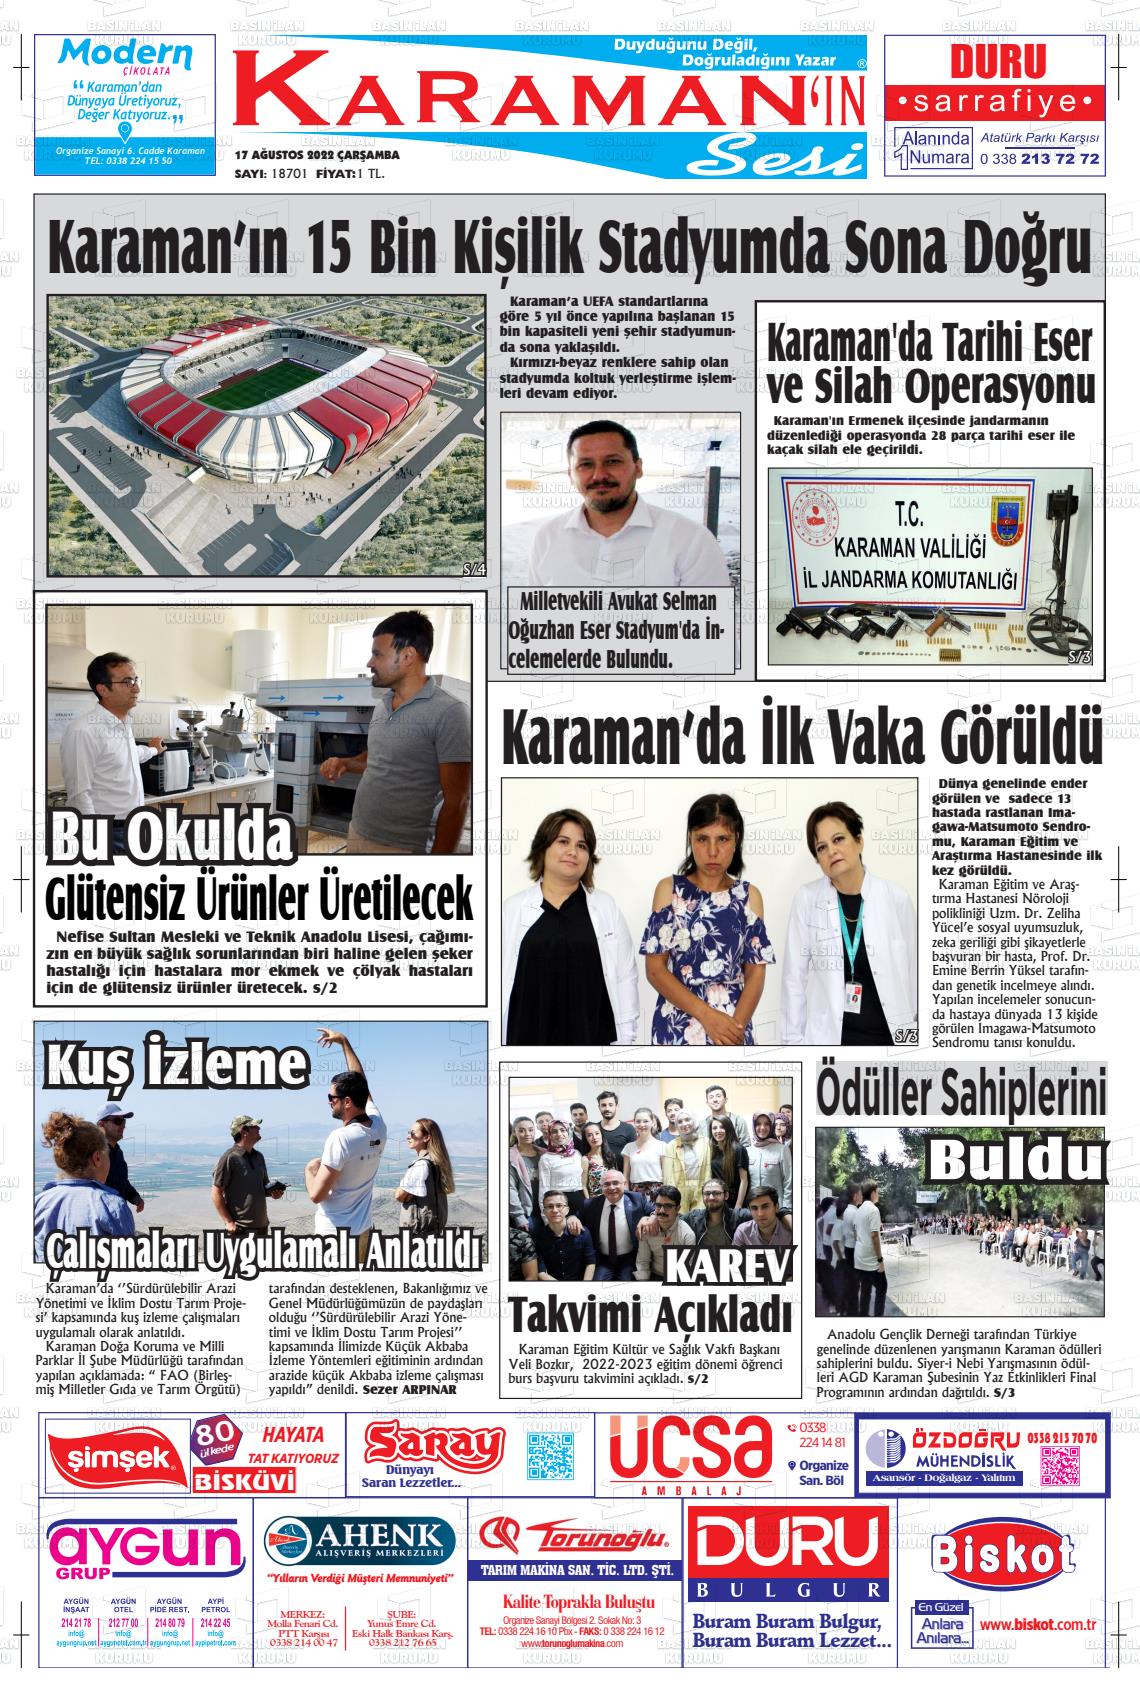 17 Ağustos 2022 Karaman'ın Sesi Gazete Manşeti